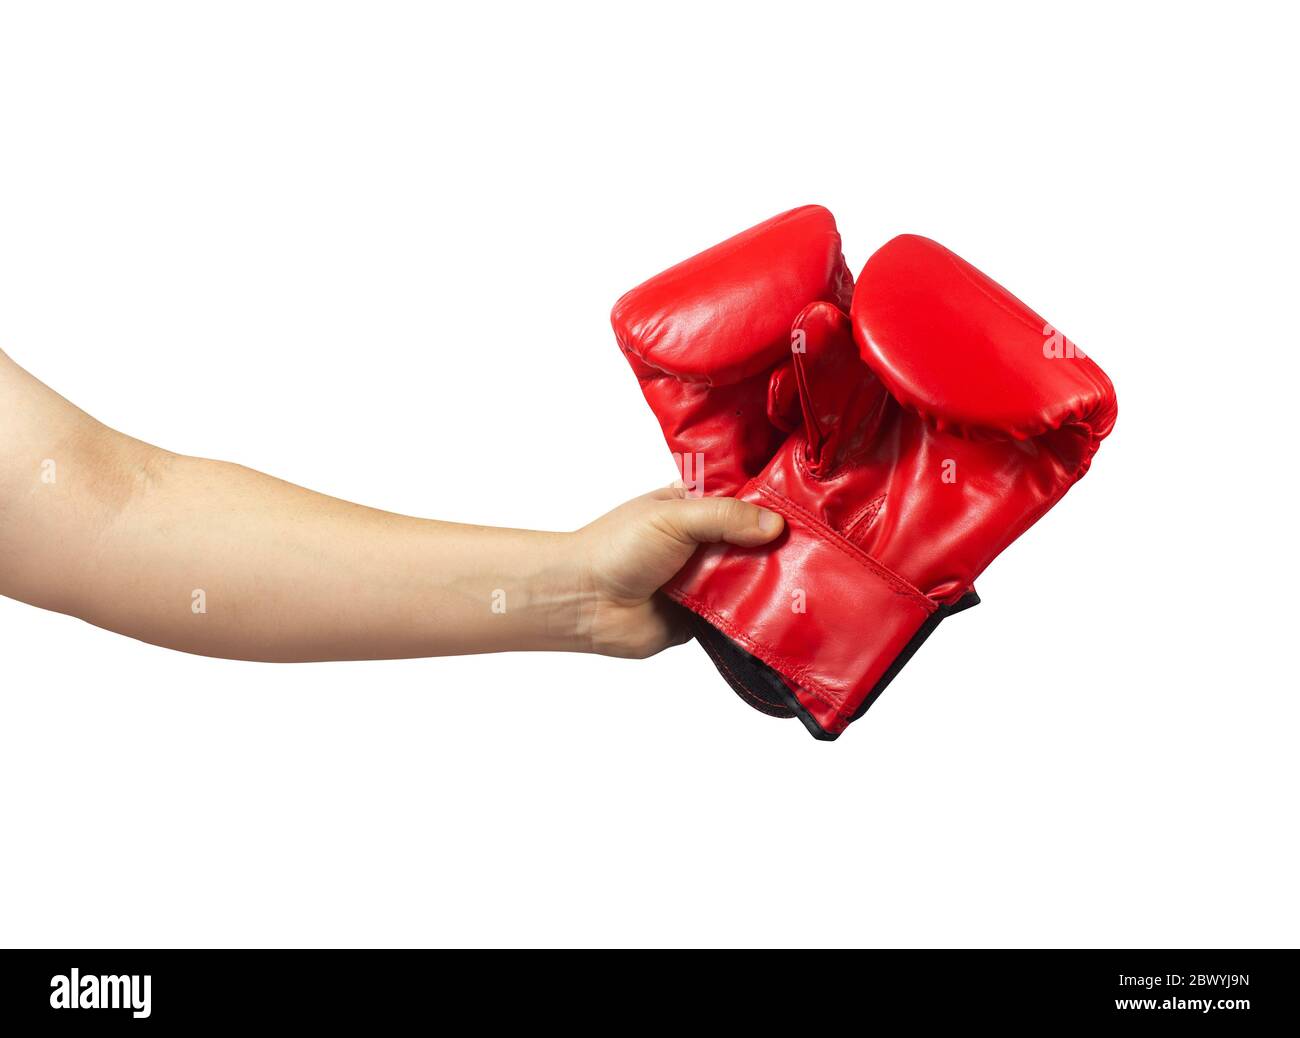 Isoliertes Foto von männlichen Hand mit roten Boxhandschuhen auf weißem Hintergrund. Stockfoto